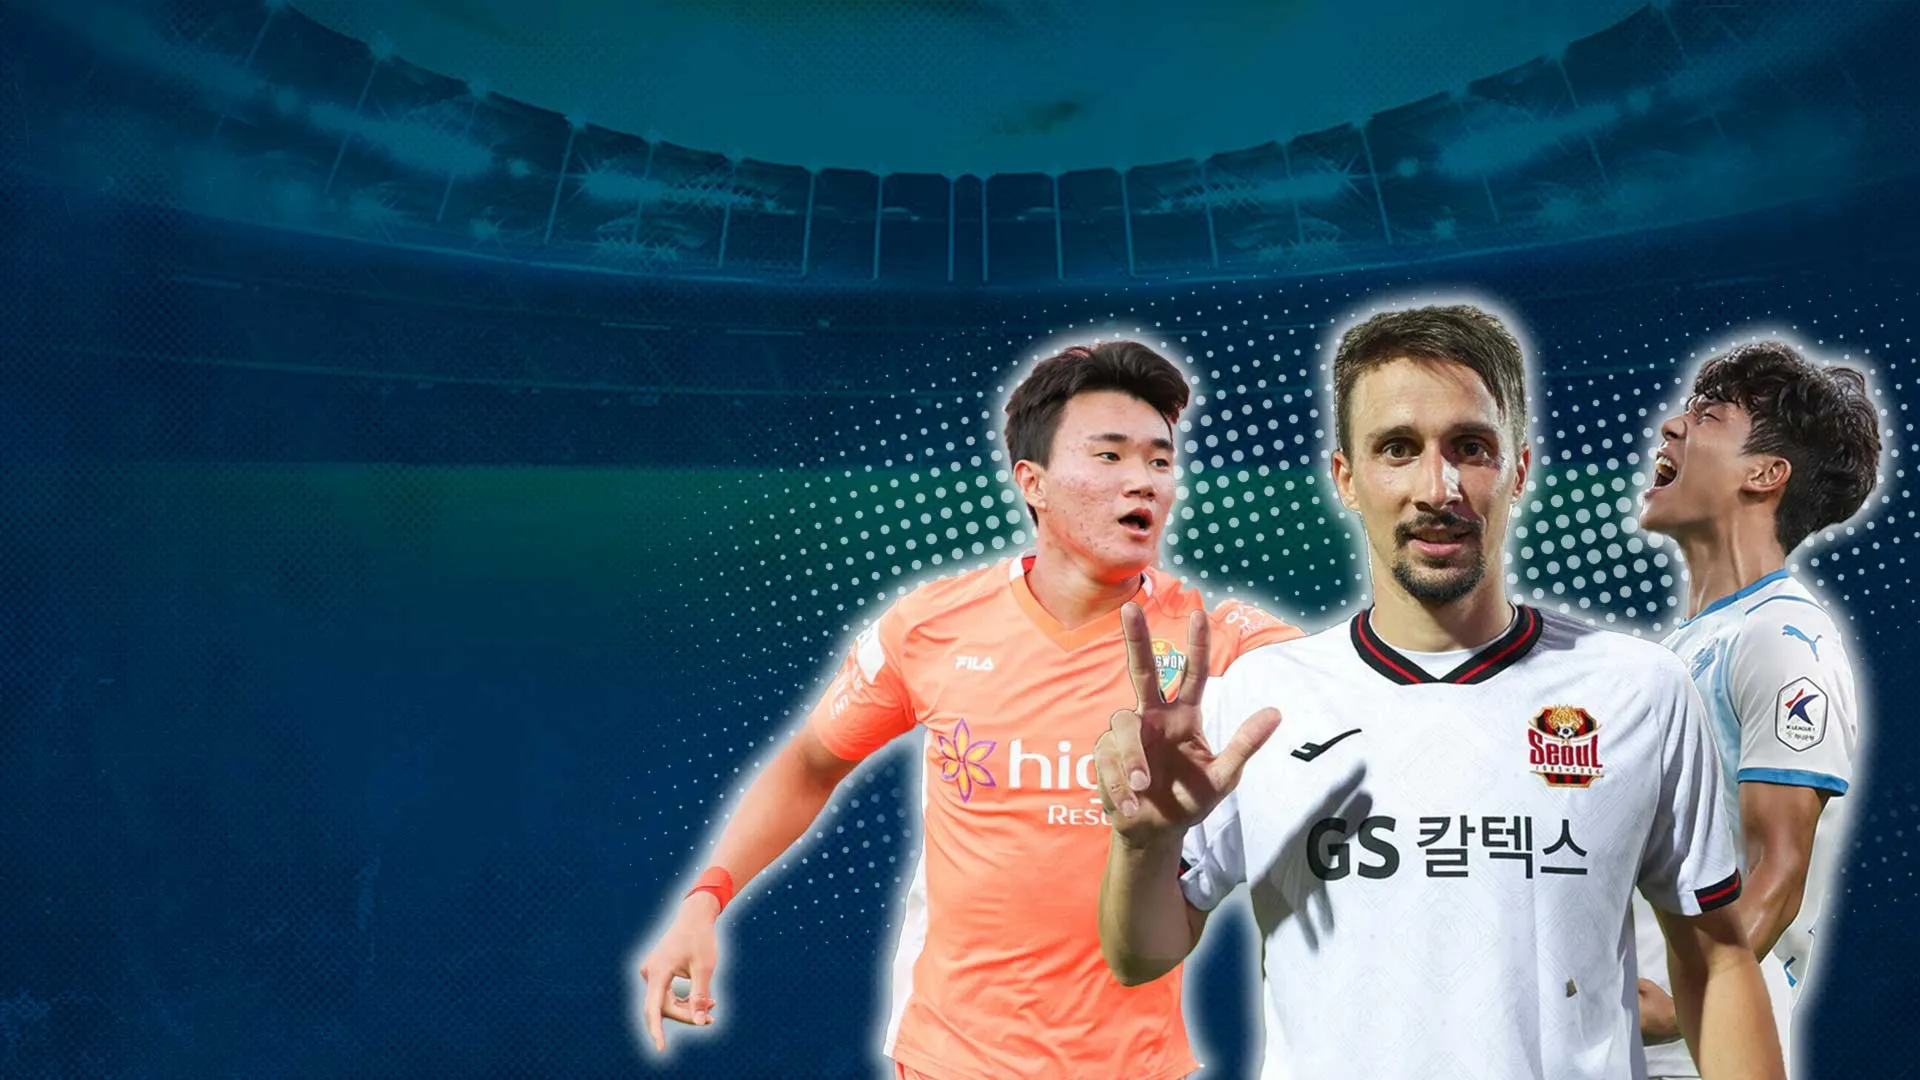 Nhận Định Trước Vòng 32 K-League 1 2022: Nhóm Giữa BXH Tranh Đấu Chen Chân Top 6